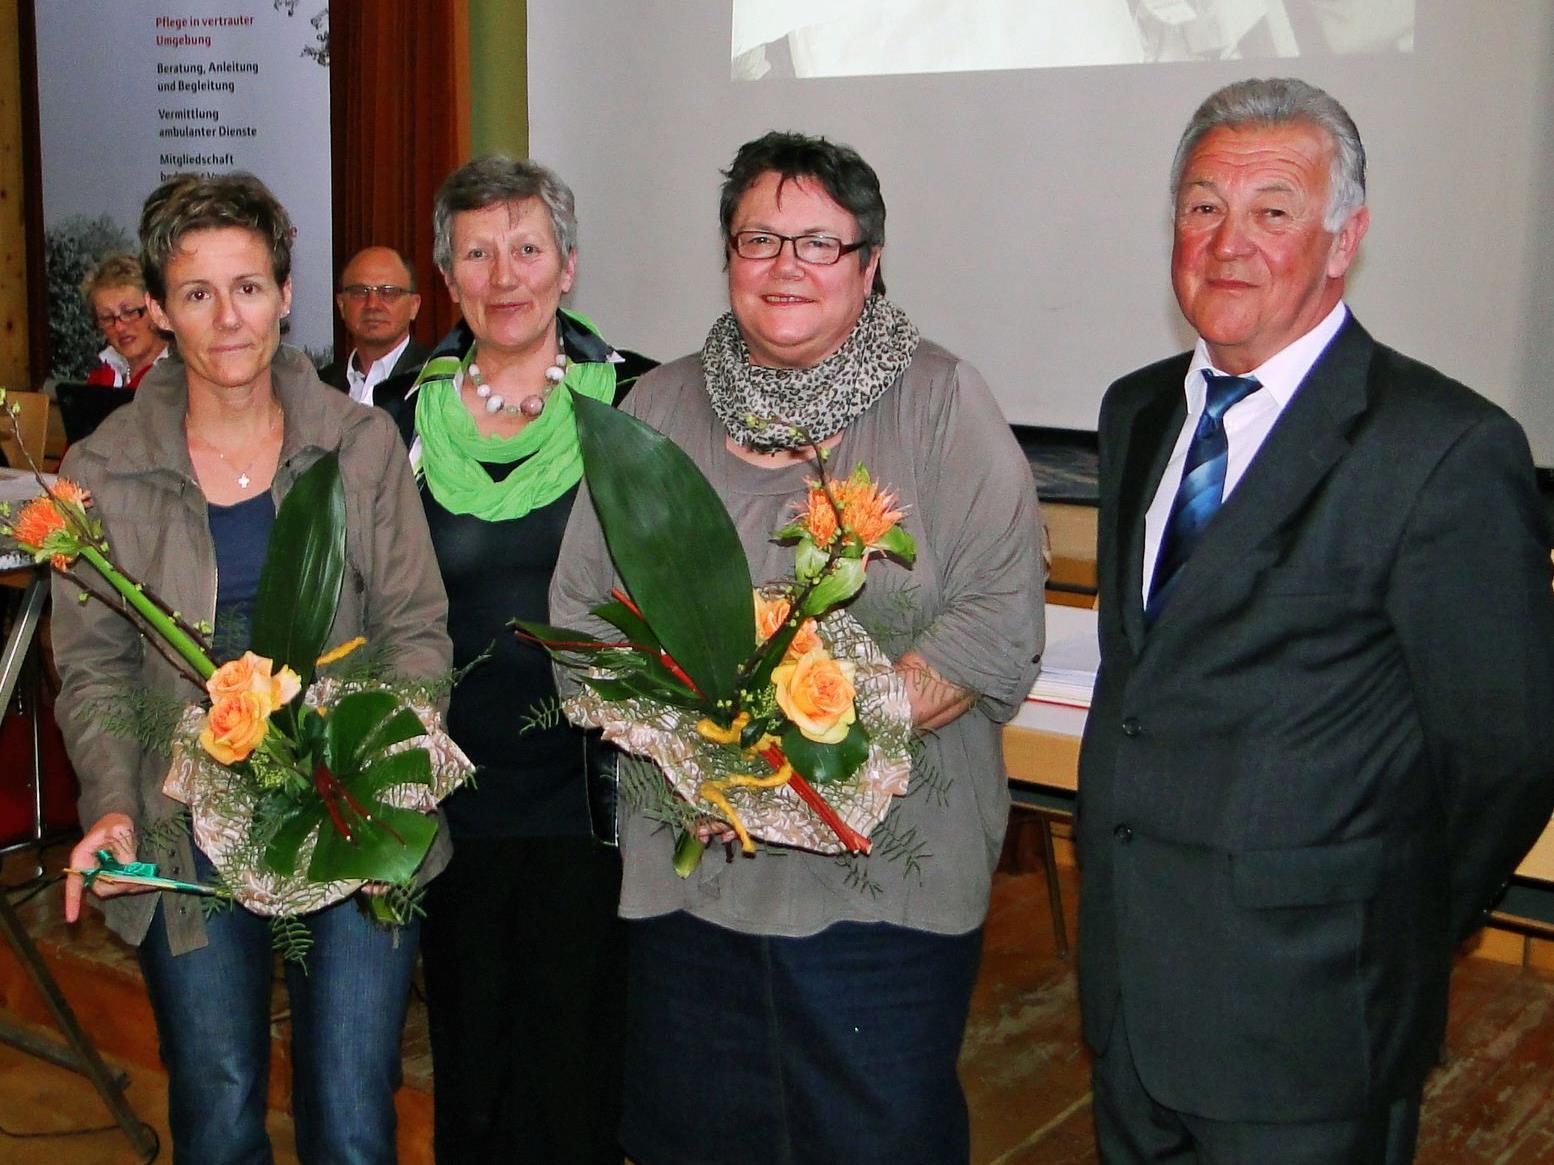 Schwester Ingrid Österle, Inge Fink, Schwester Maria Heim und Obmann Armin Heim